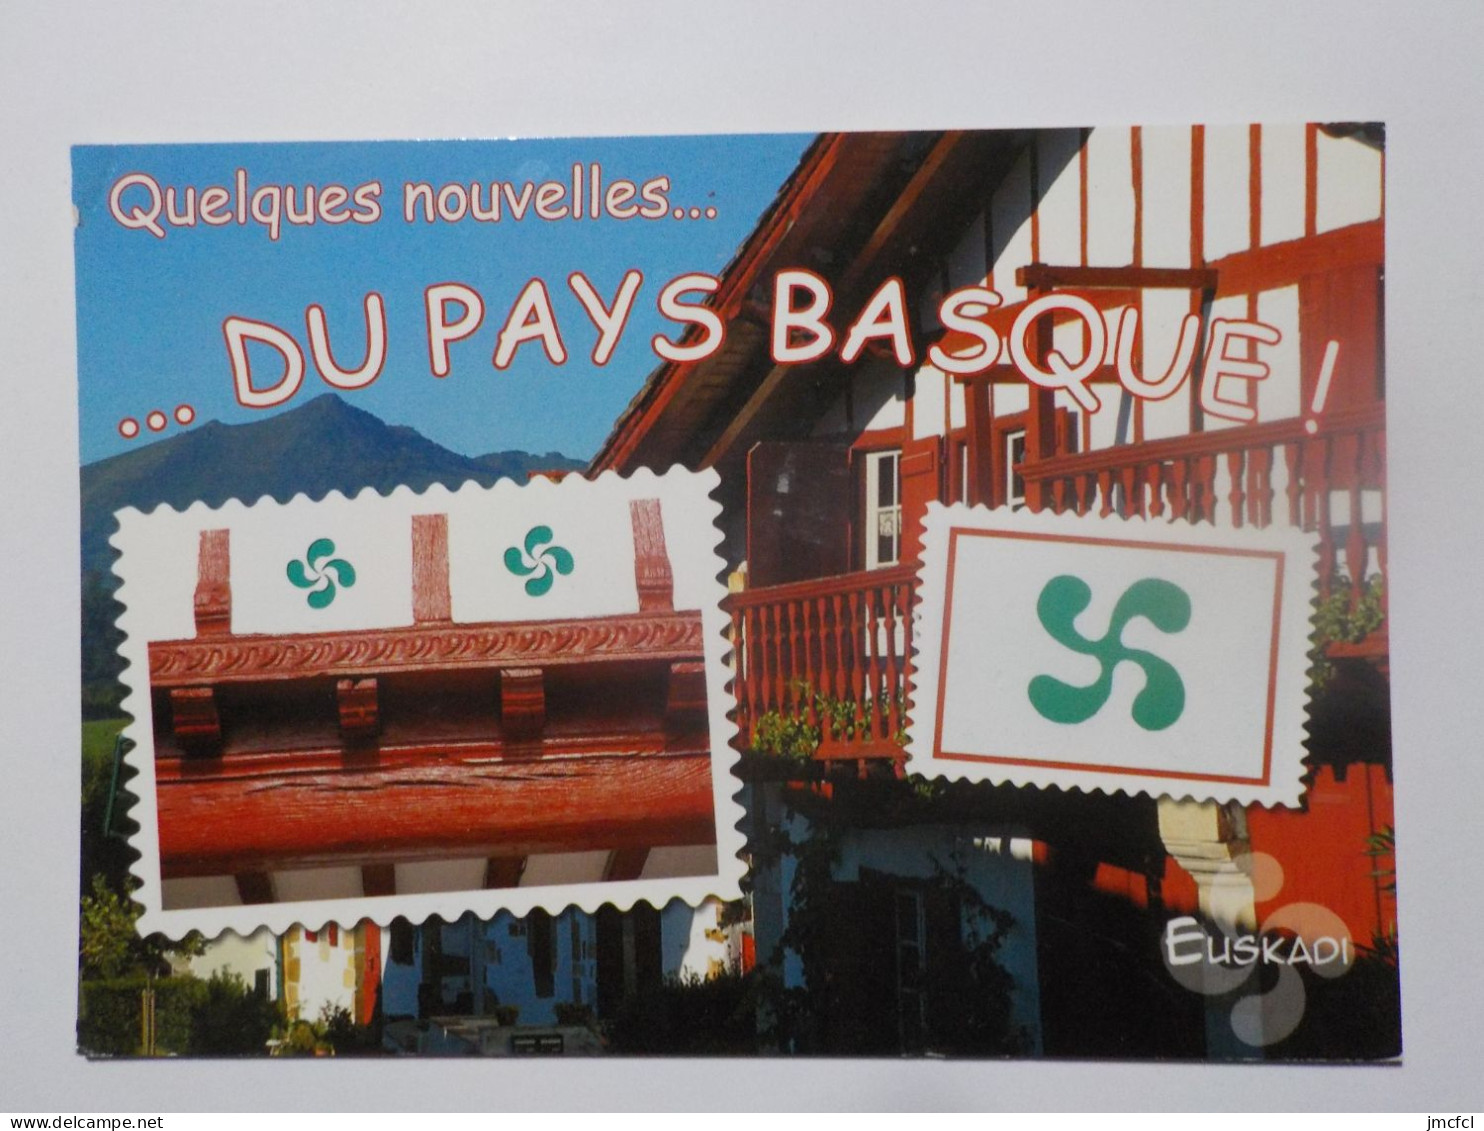 PAYS BASQUE (dept 64)  42 Cartes  a 0.20 euros l'une